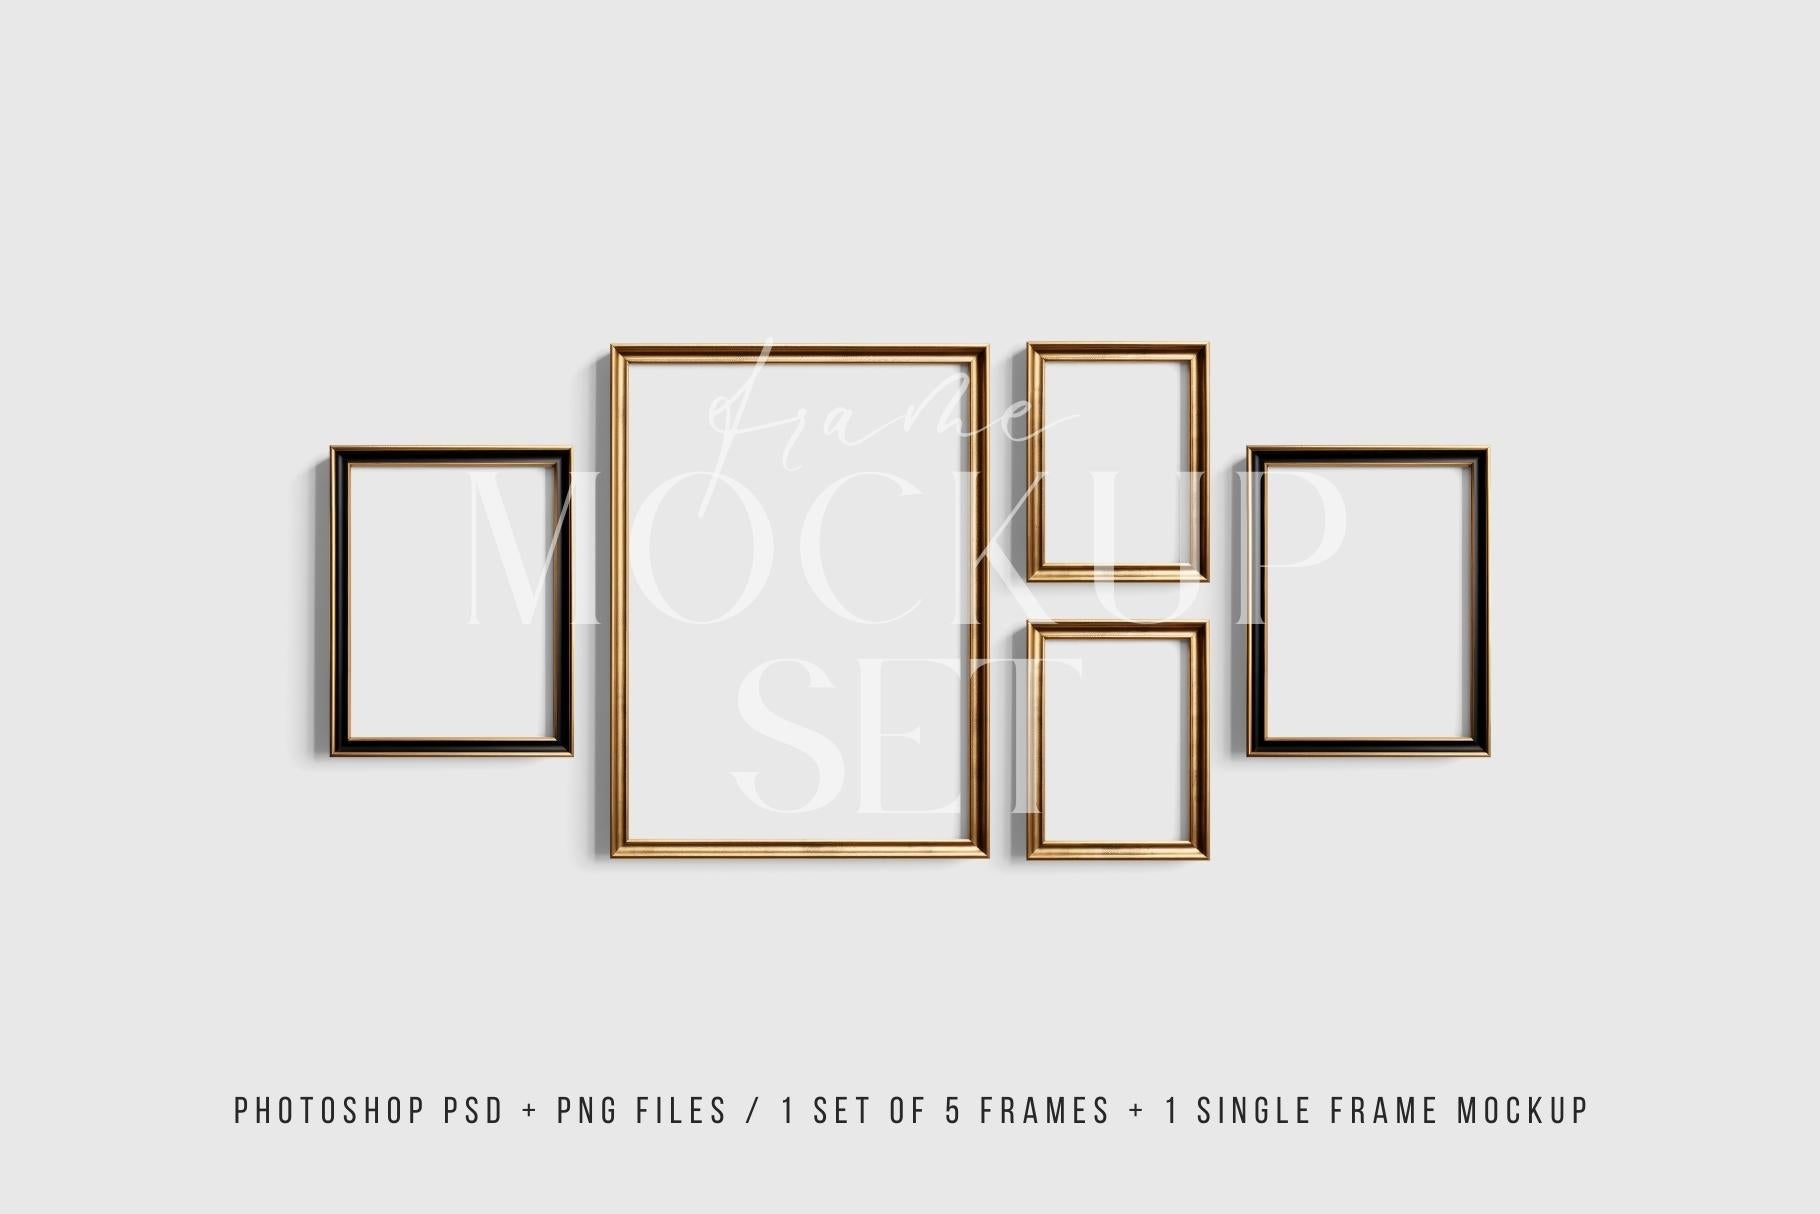 Gallery Wall Mockup | Metallic Frame Mockup Set of 5 Vertical Frames 5:7, 3:4 | Elegant Black and Gold Frame Mockup Set | PSD Template + Transparent PNG Files